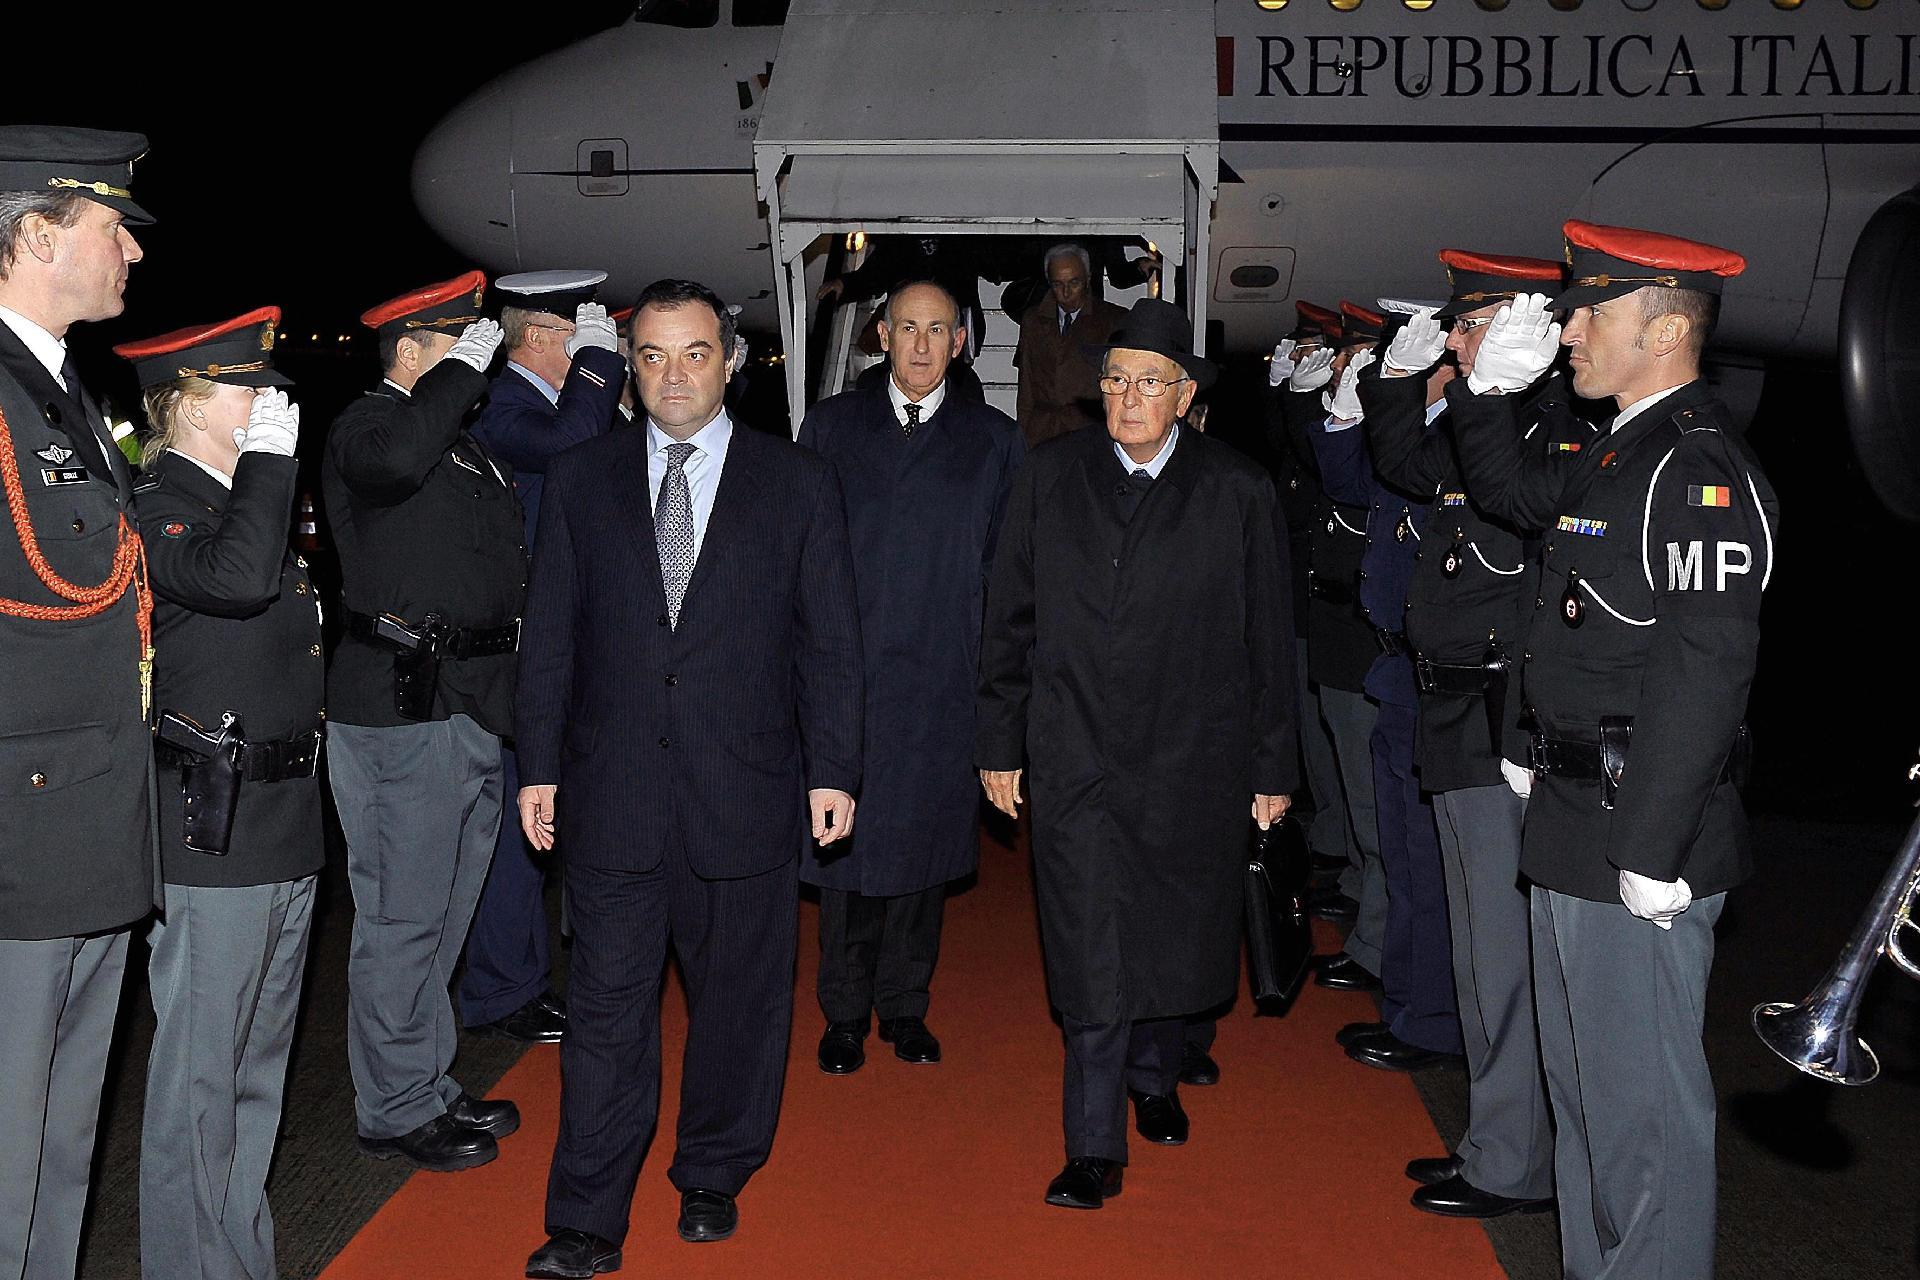 Il Presidente Giorgio Napolitano al suo arrivo all'Aeroporto militare di Melsbroek